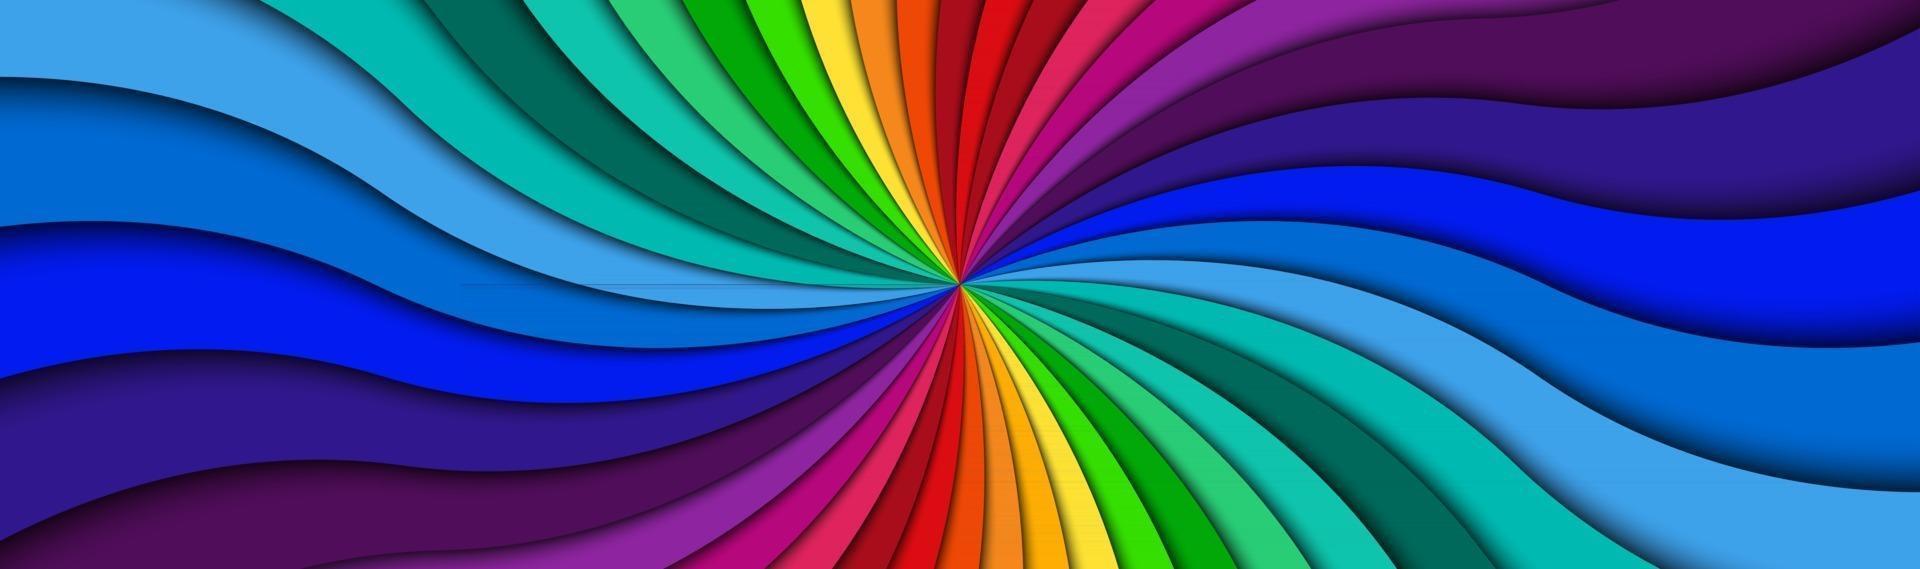 En-tête en spirale de couleur lumineux tourbillonnant coloré bannière motif radial abstract vector illustration